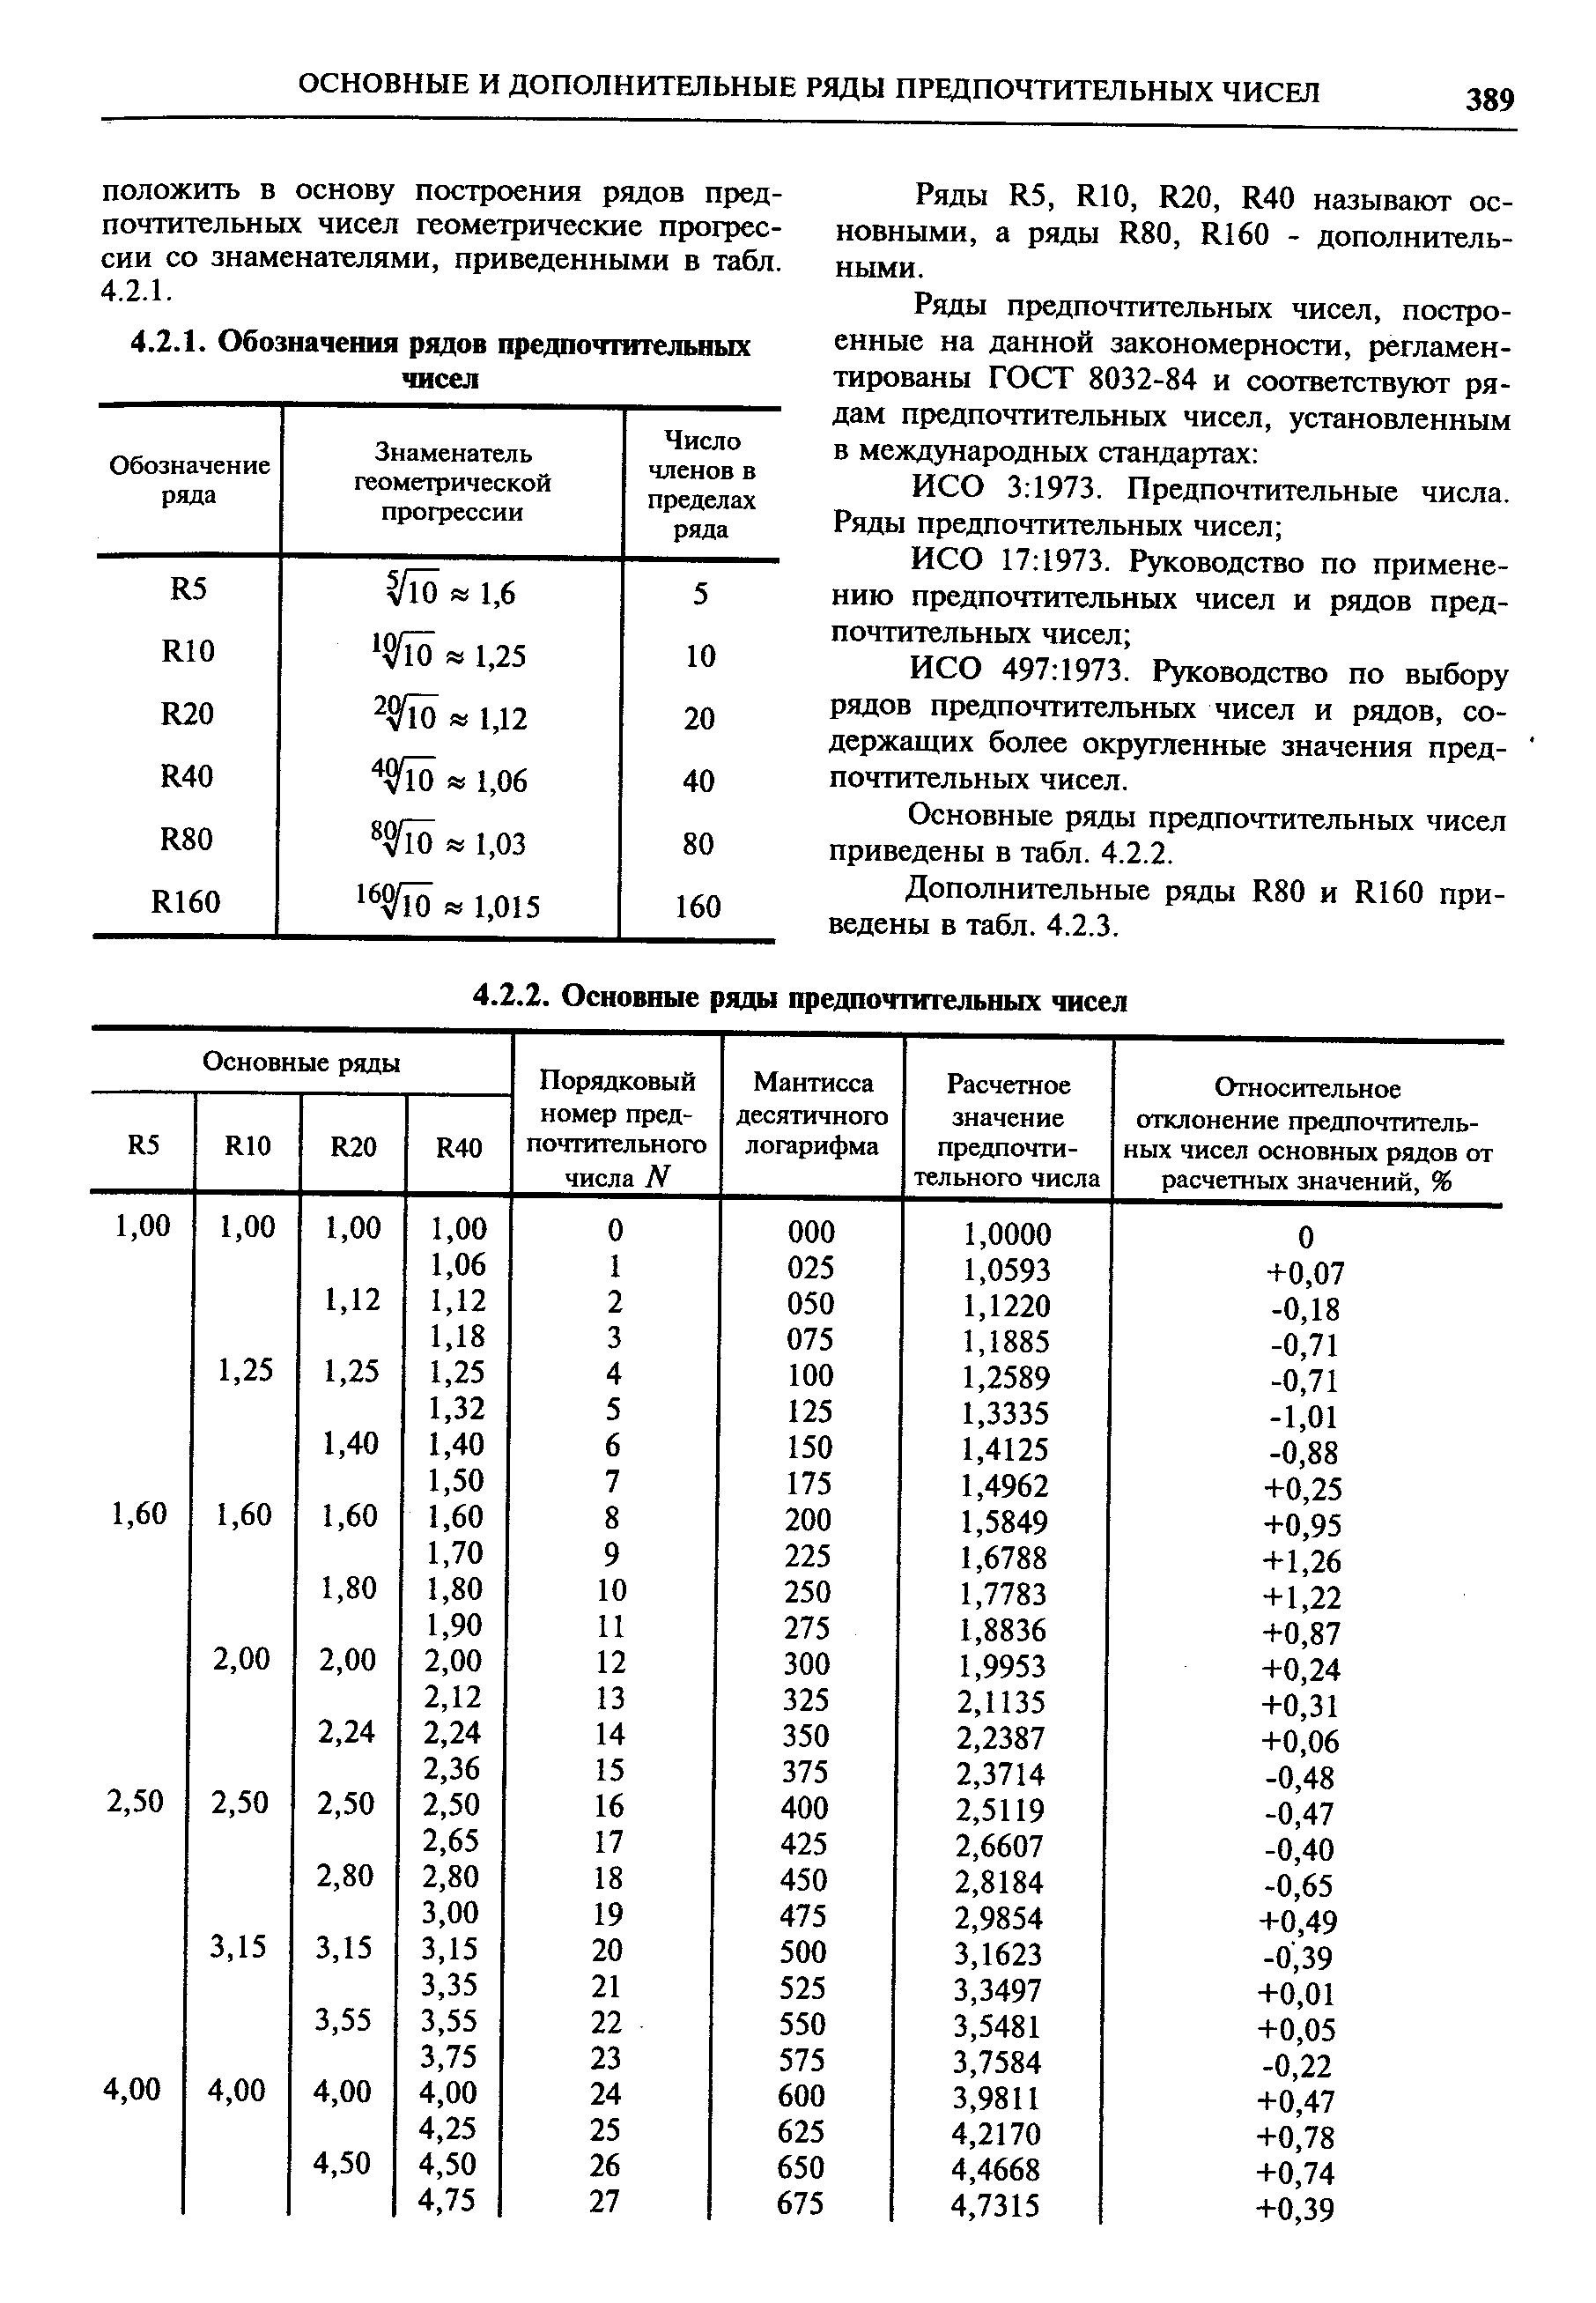 ИСО 497 1973. Руководство по выбору рядов предпочтительных чисел и рядов, содержащих более округленные значения предпочтительных чисел.
